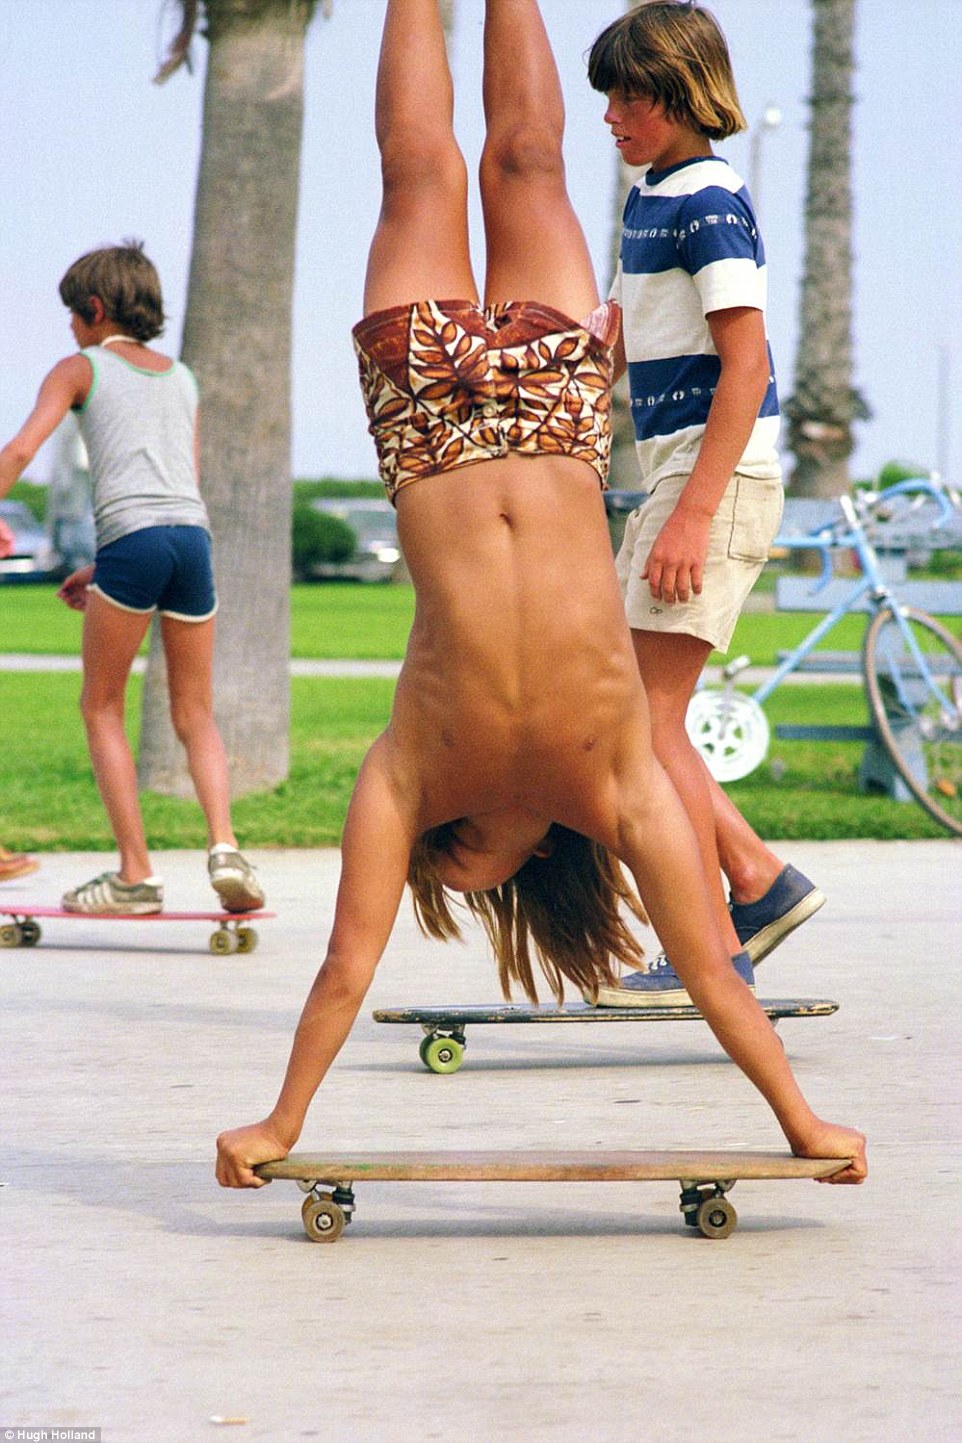 SkateboardinginCaliforniaDuringthe1970s10